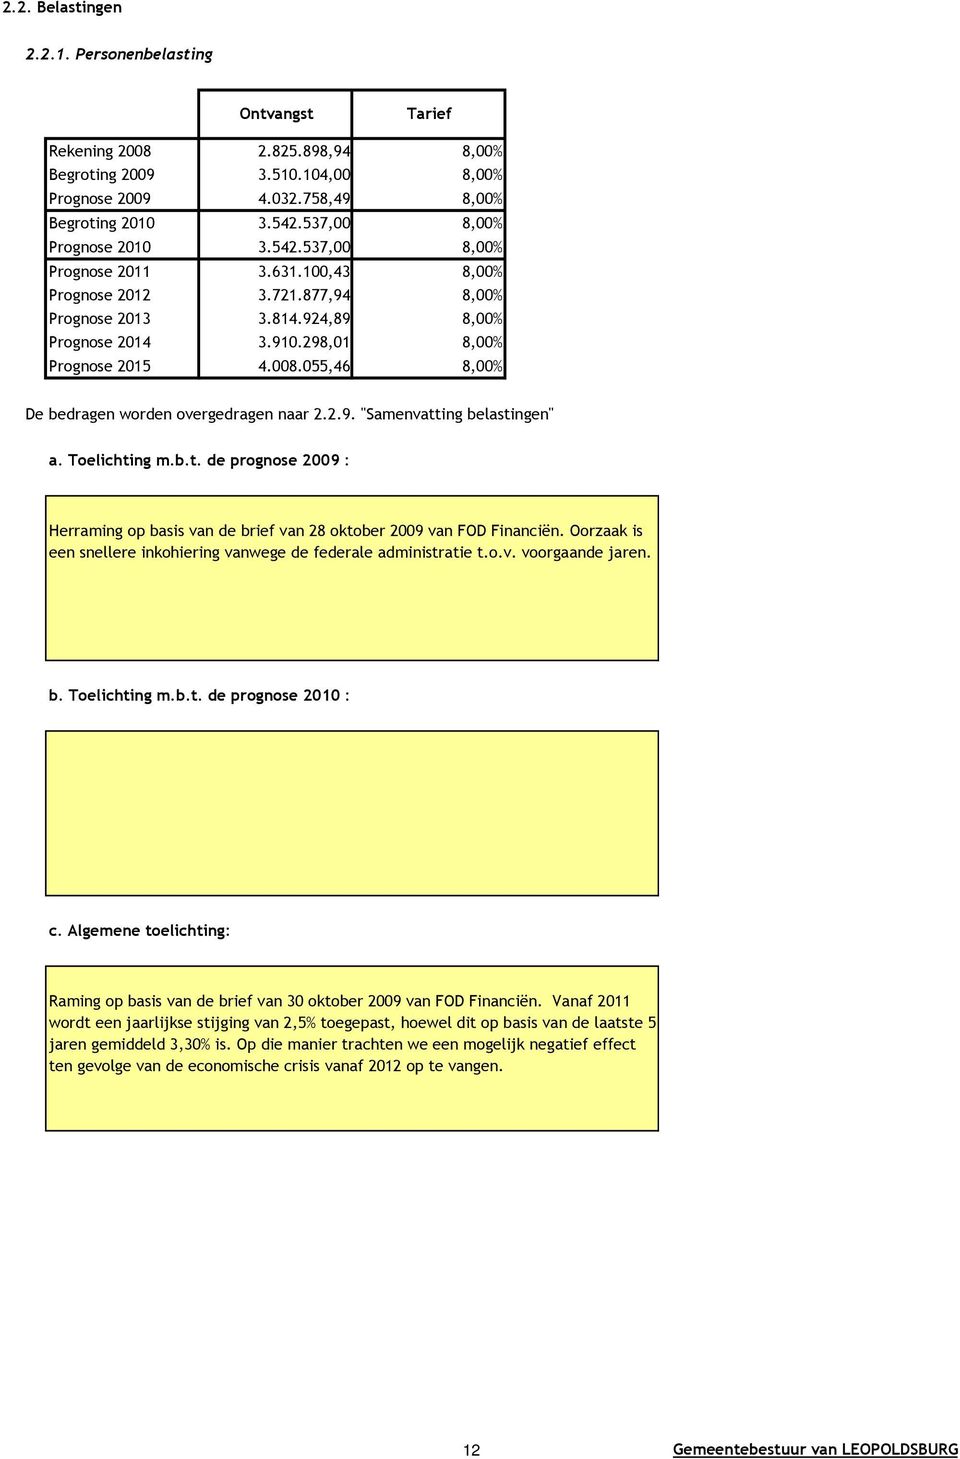 055,46 8,00% De bedragen worden overgedragen naar 2.2.9. "Samenvatting belastingen" a. Toelichting m.b.t. de prognose 2009 : Herraming op basis van de brief van 28 oktober 2009 van FOD Financiën.